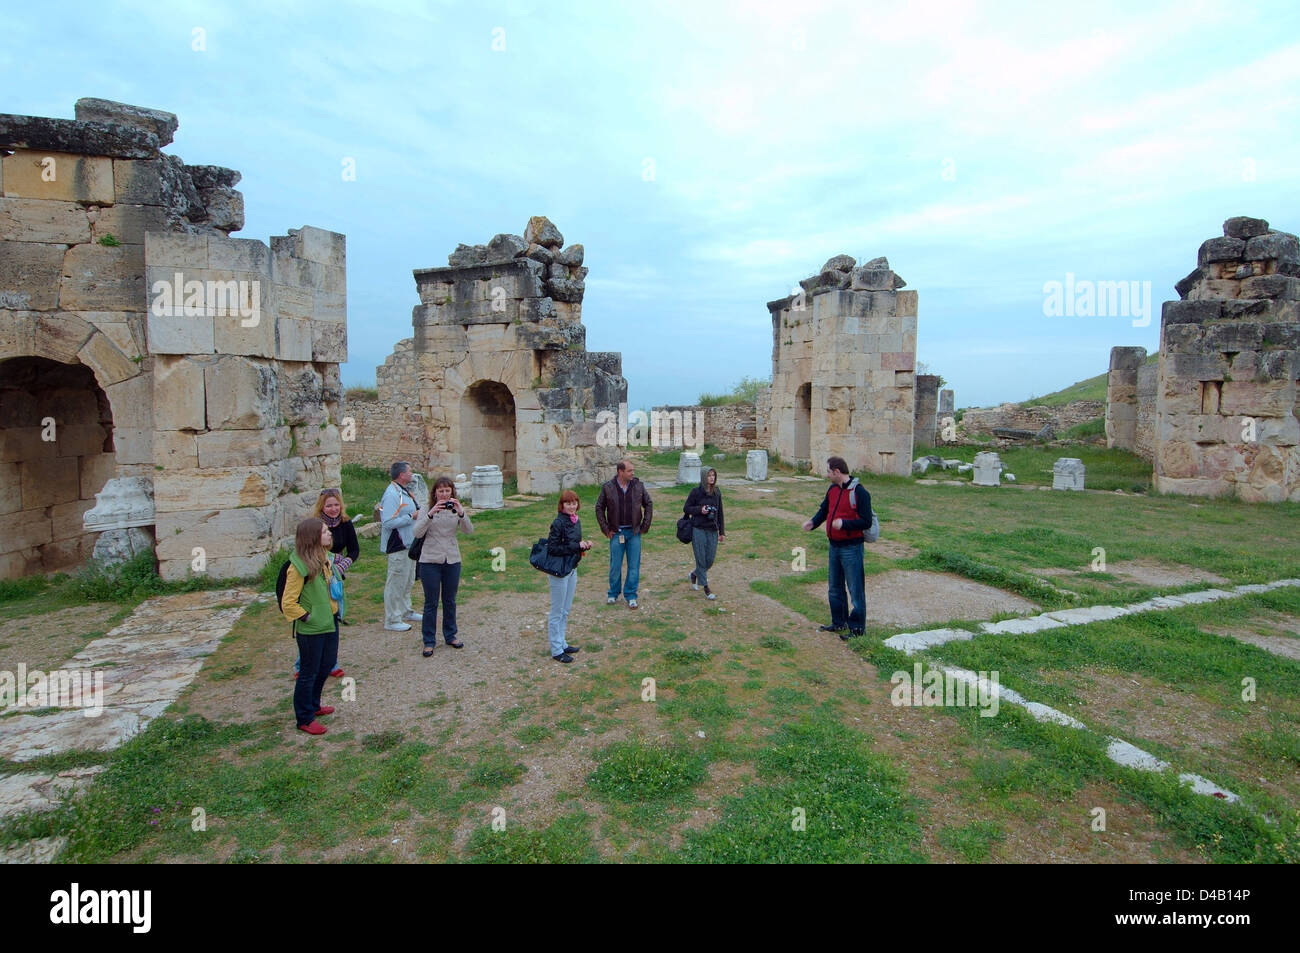 Les ruines de l'ancienne église orthodoxe, ville antique d'Hiérapolis, Pamukkale, Turquie, l'Asie occidentale Banque D'Images